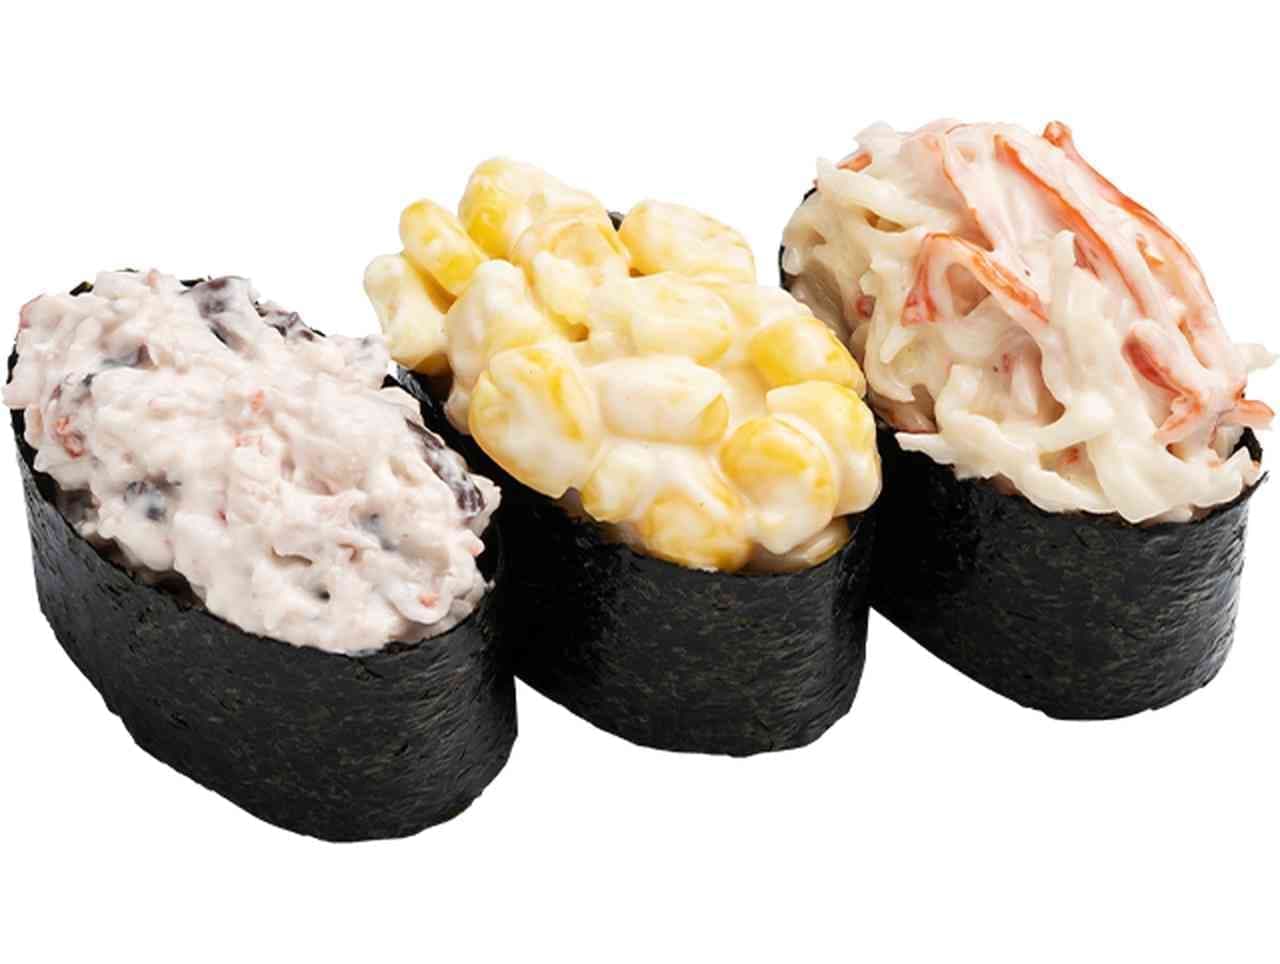 Kappa Sushi "Salad Gunkan San-Type Array" (three kinds of salad)